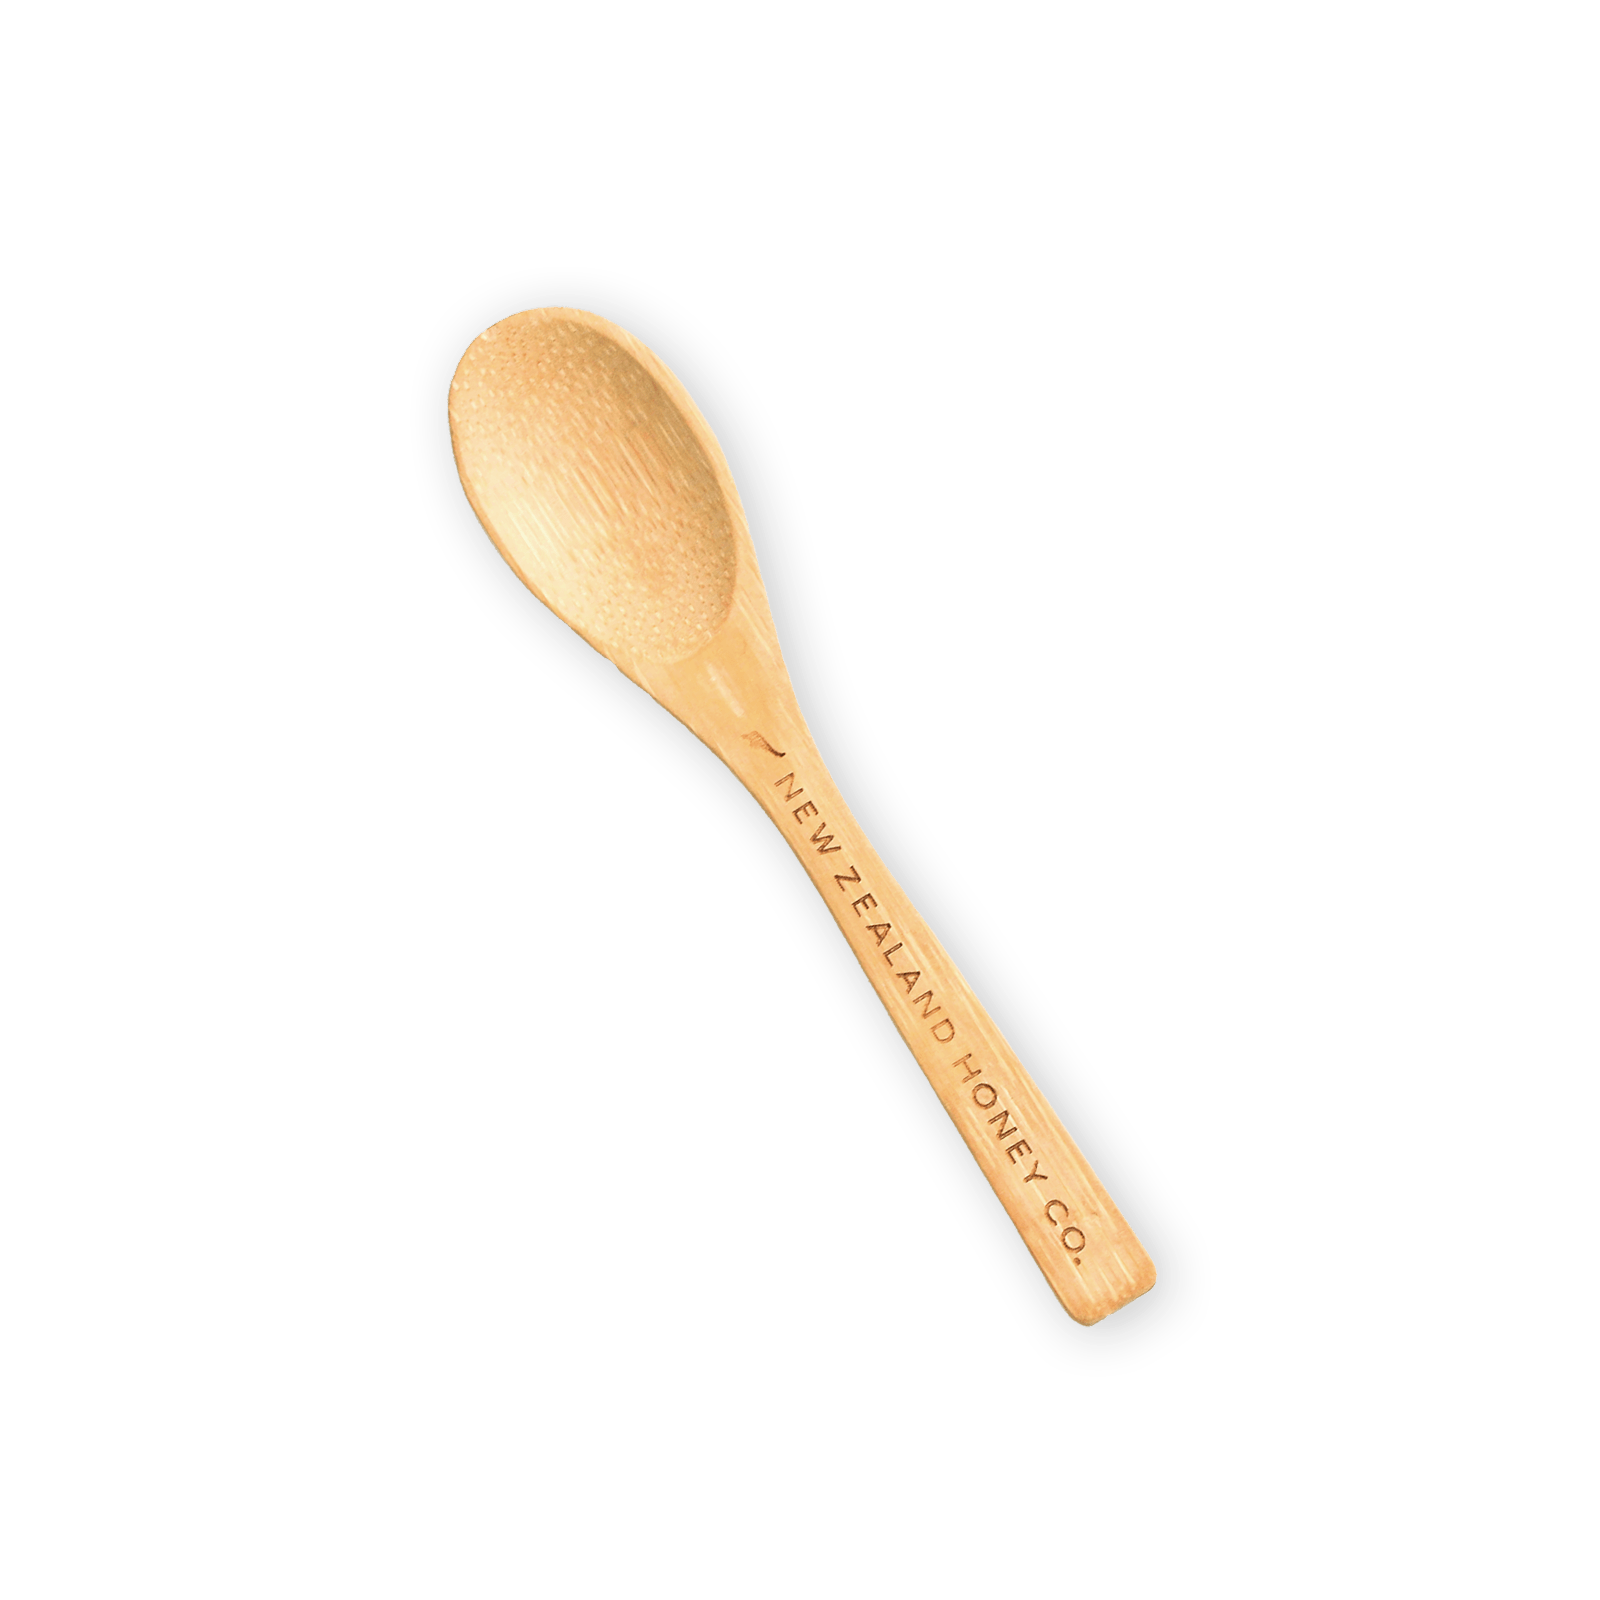 New Zealand Honey Co. Daily Spoon